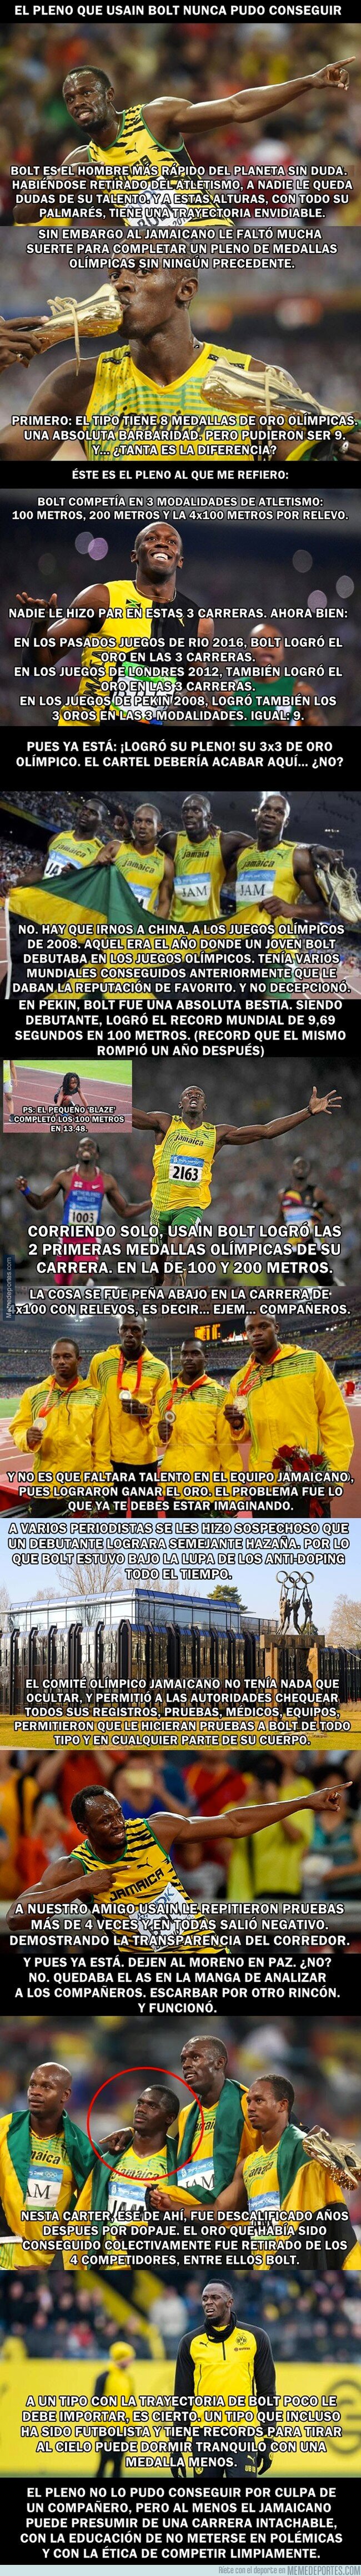 1064499 - El pleno de medallas que Usain Bolt perdió por un compañero